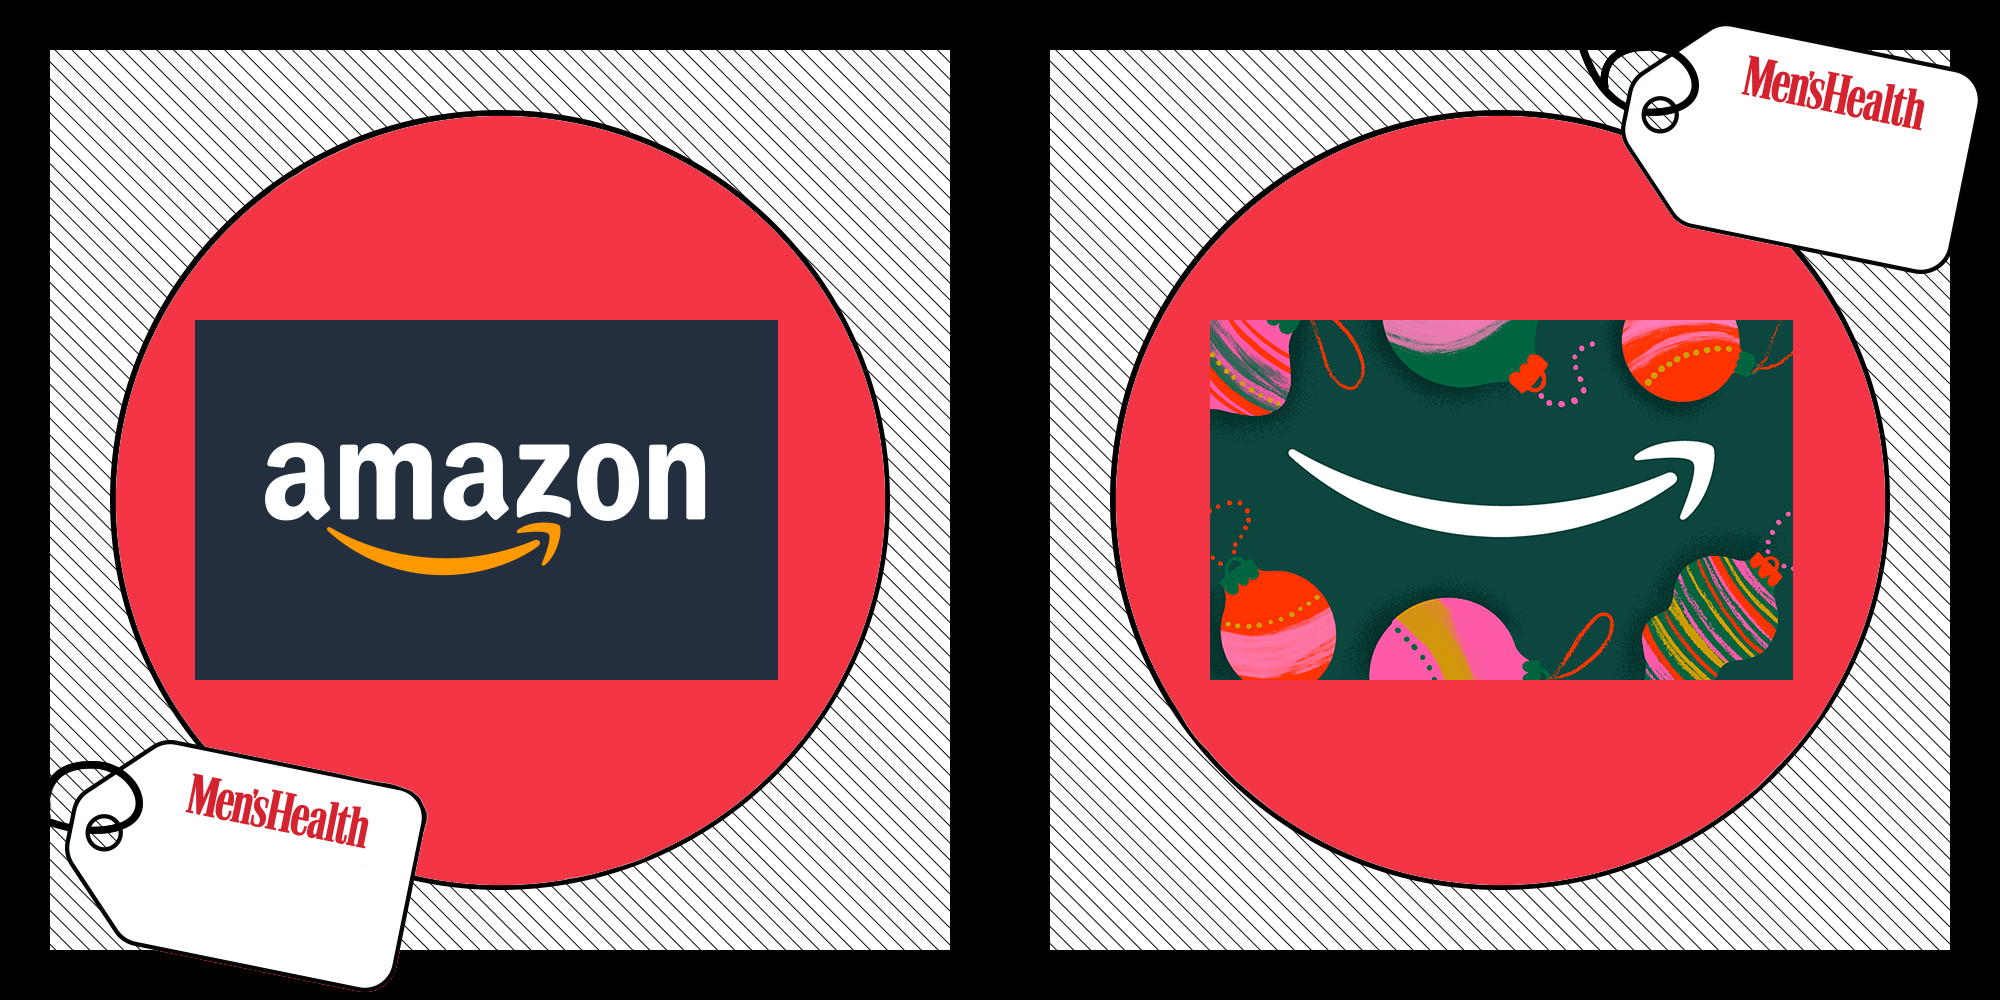 How to Buy Amazon Gift Card With Mobikwik | Mobikwik Amazon Gift Card With  Discount - YouTube